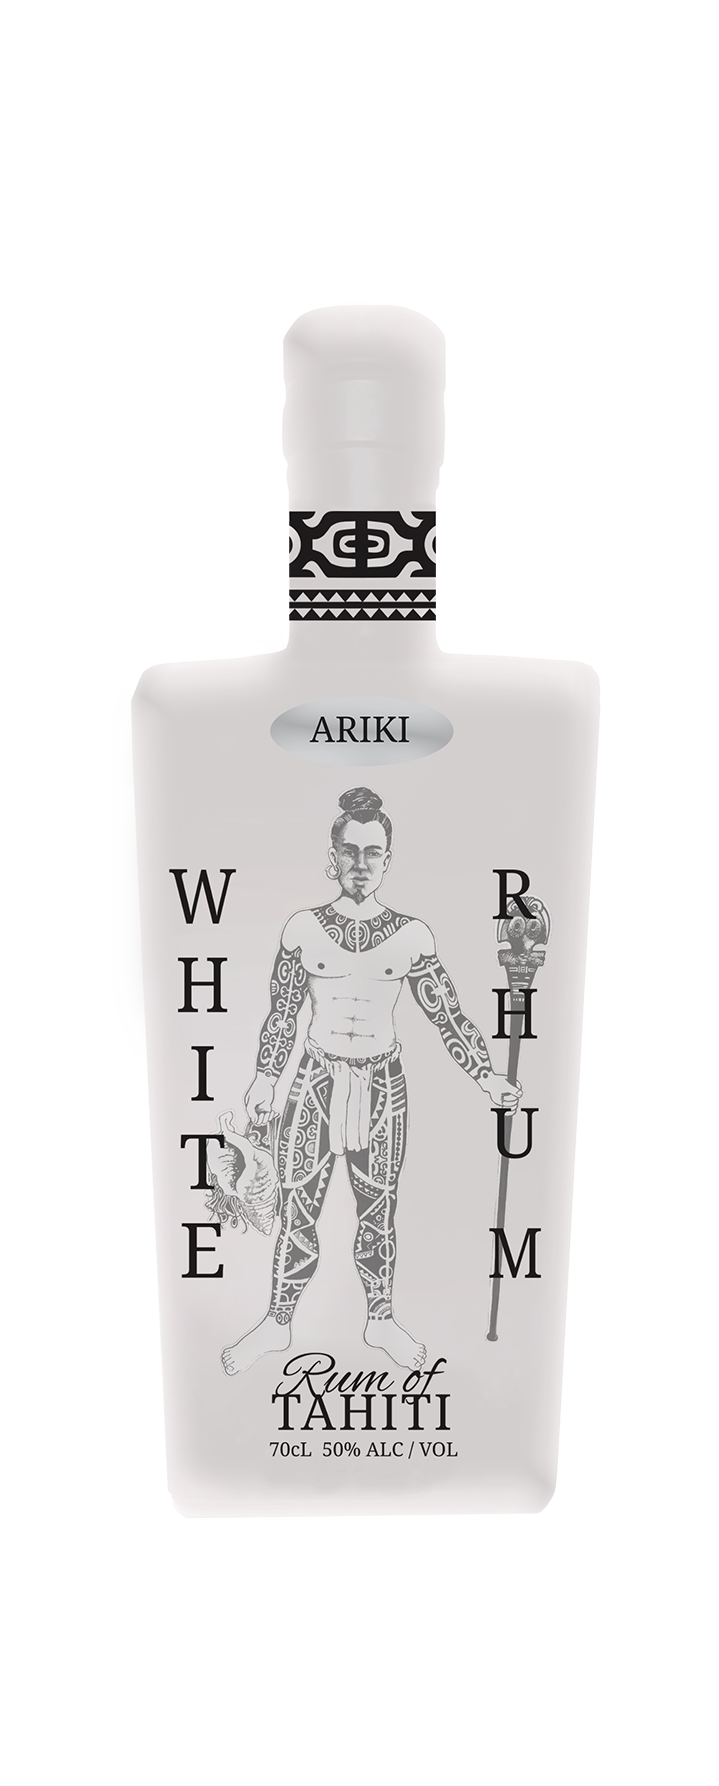 Ariki White Rum of Tahiti 700ml x6 Bottles 50% ALC/VOL.